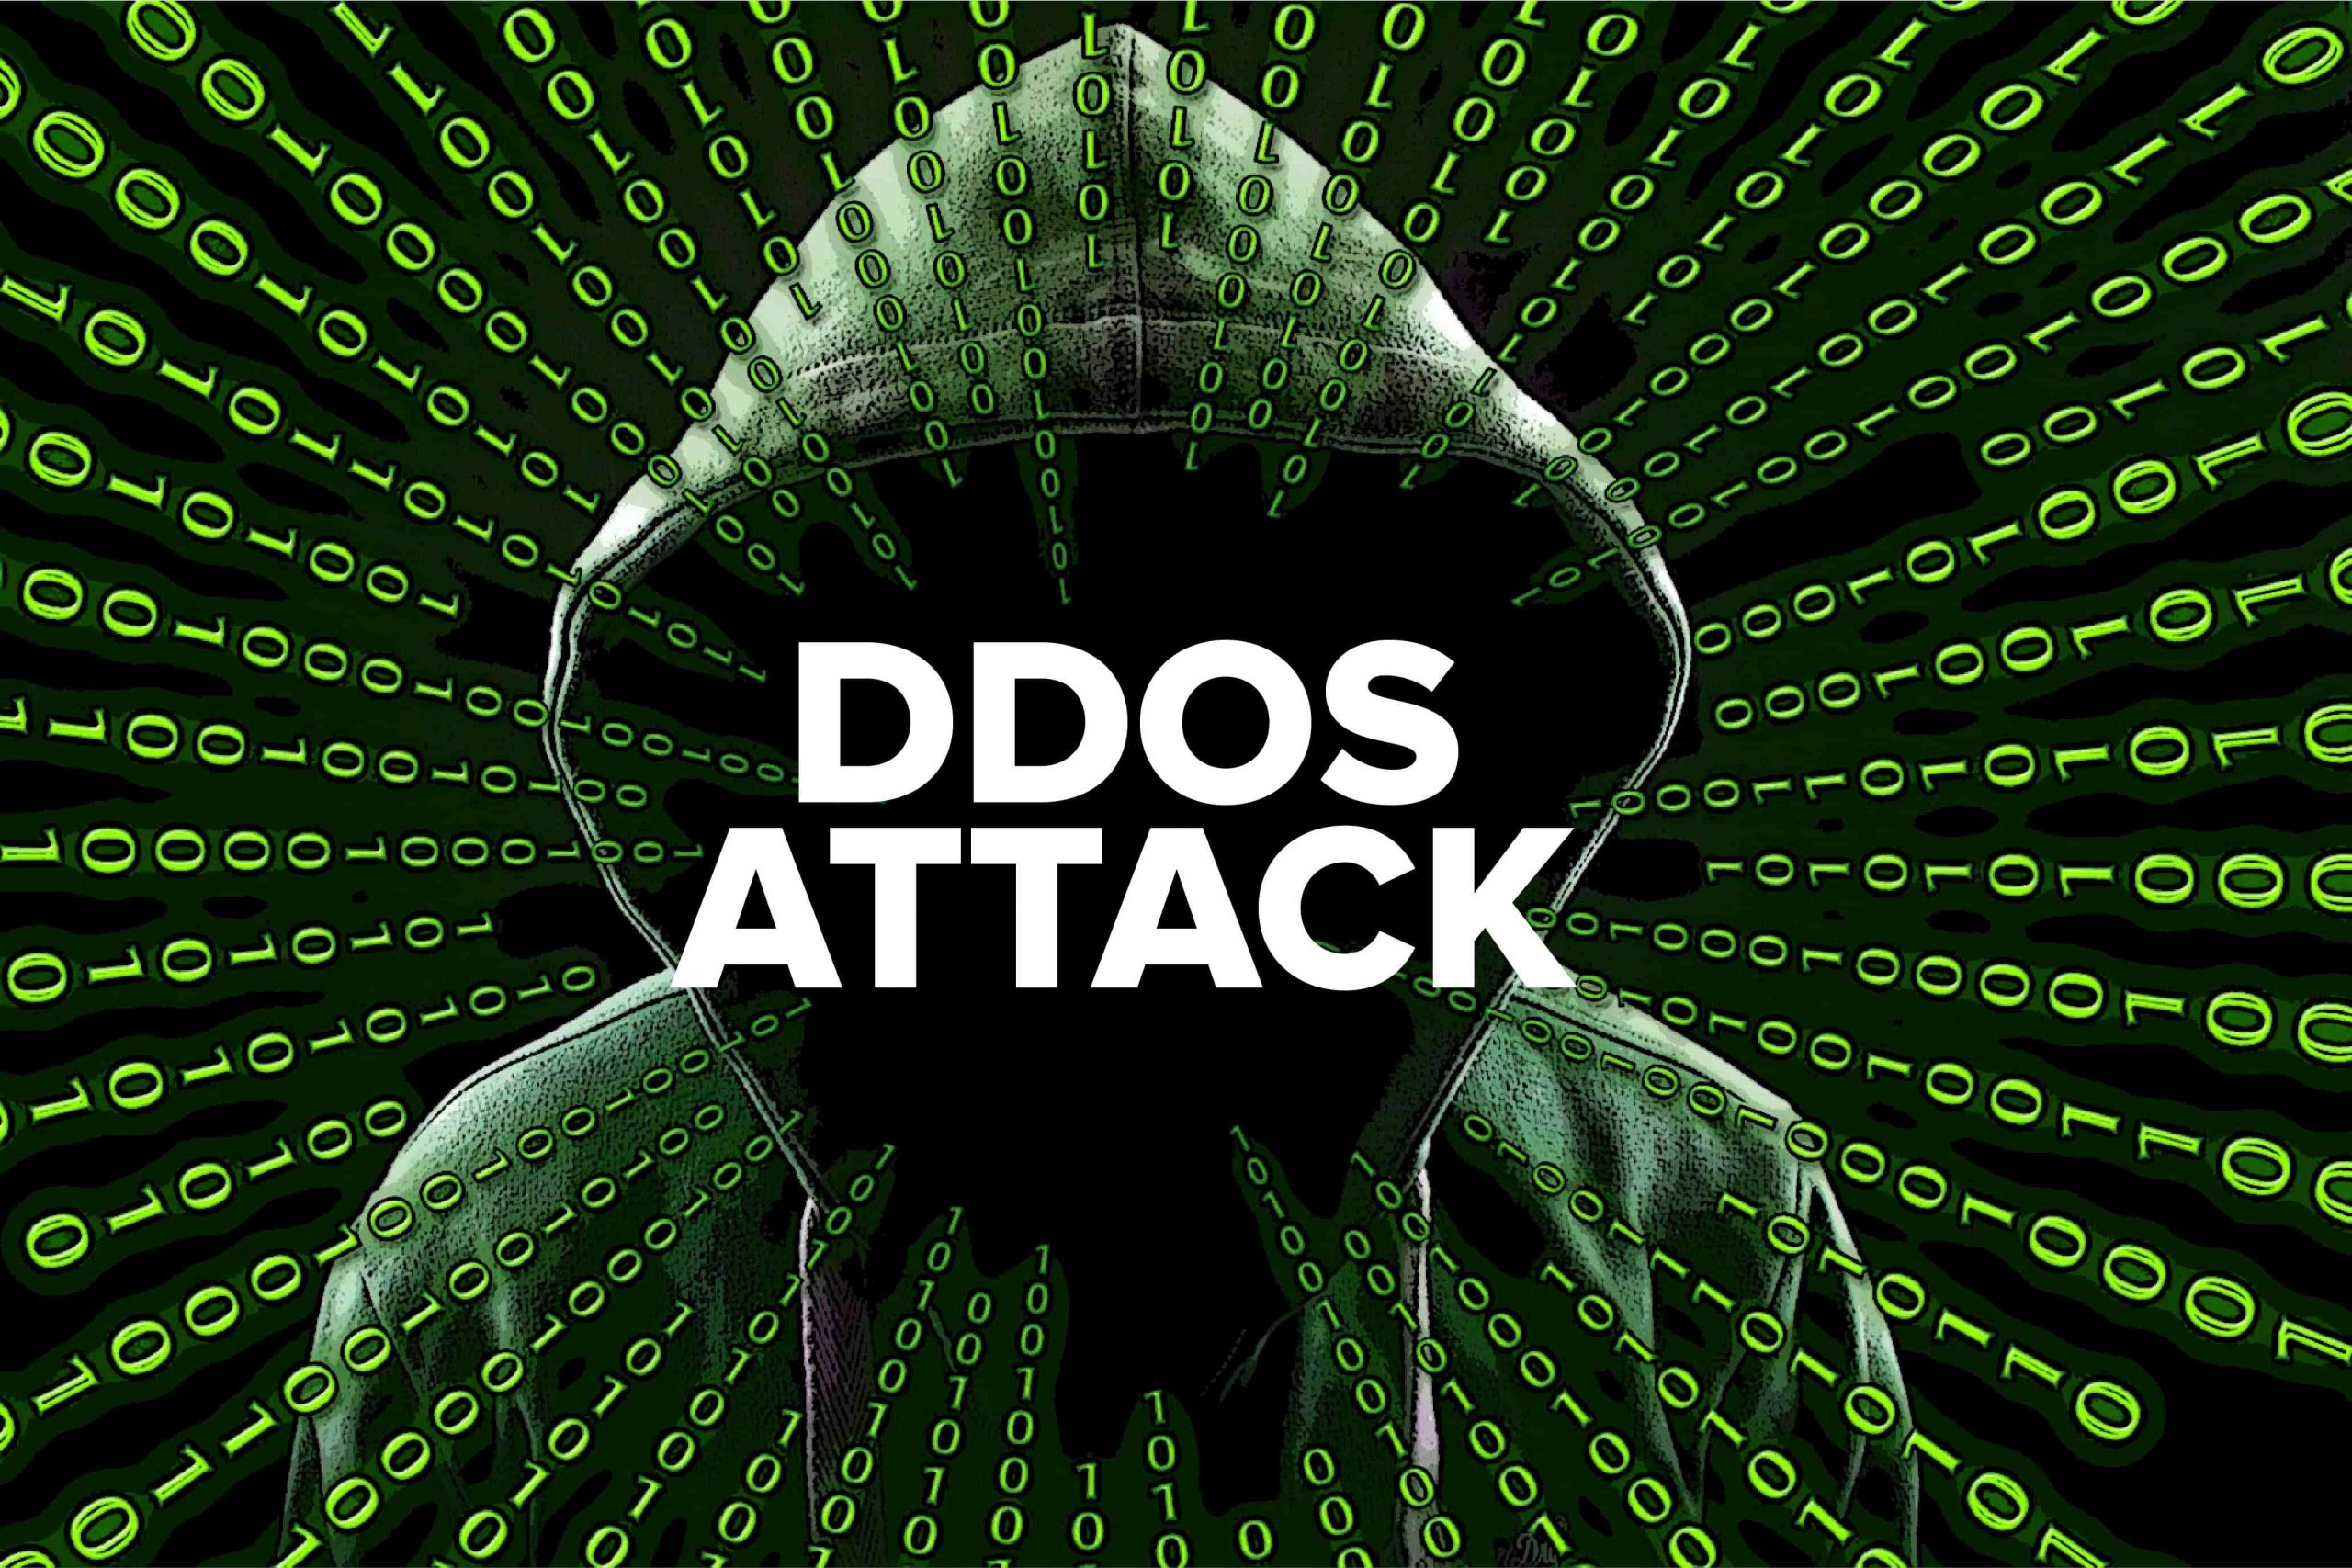 Сайт атакует. DDOS. Хакеры DDOS. Dos-атака. Ддос атака картинка.